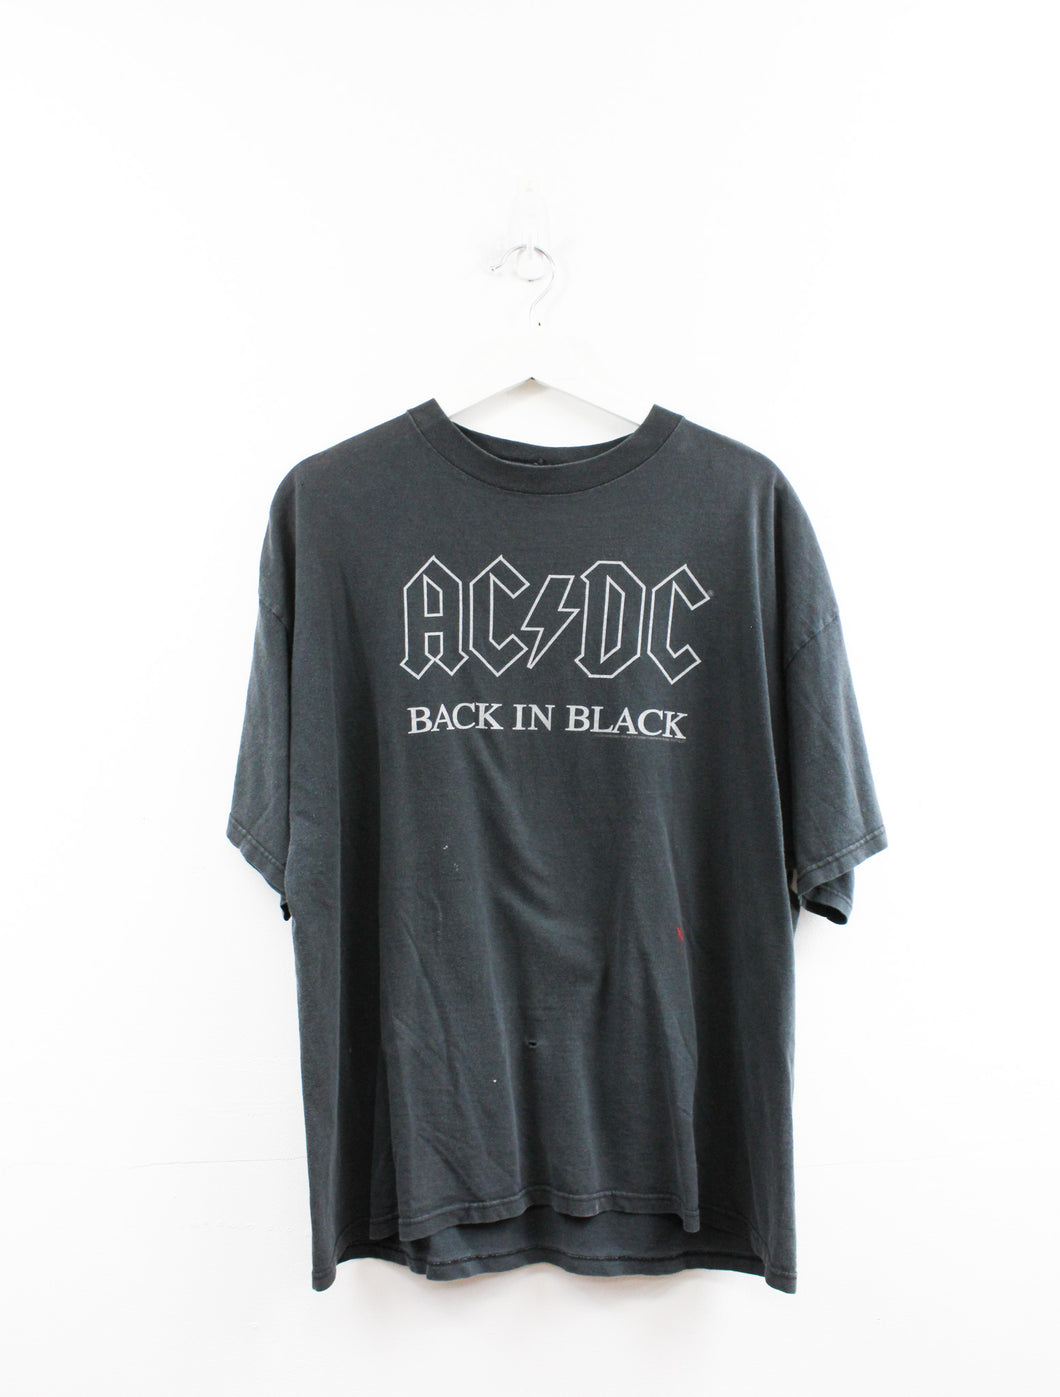 Vintage 2005 AC/DC Back In Black Tee